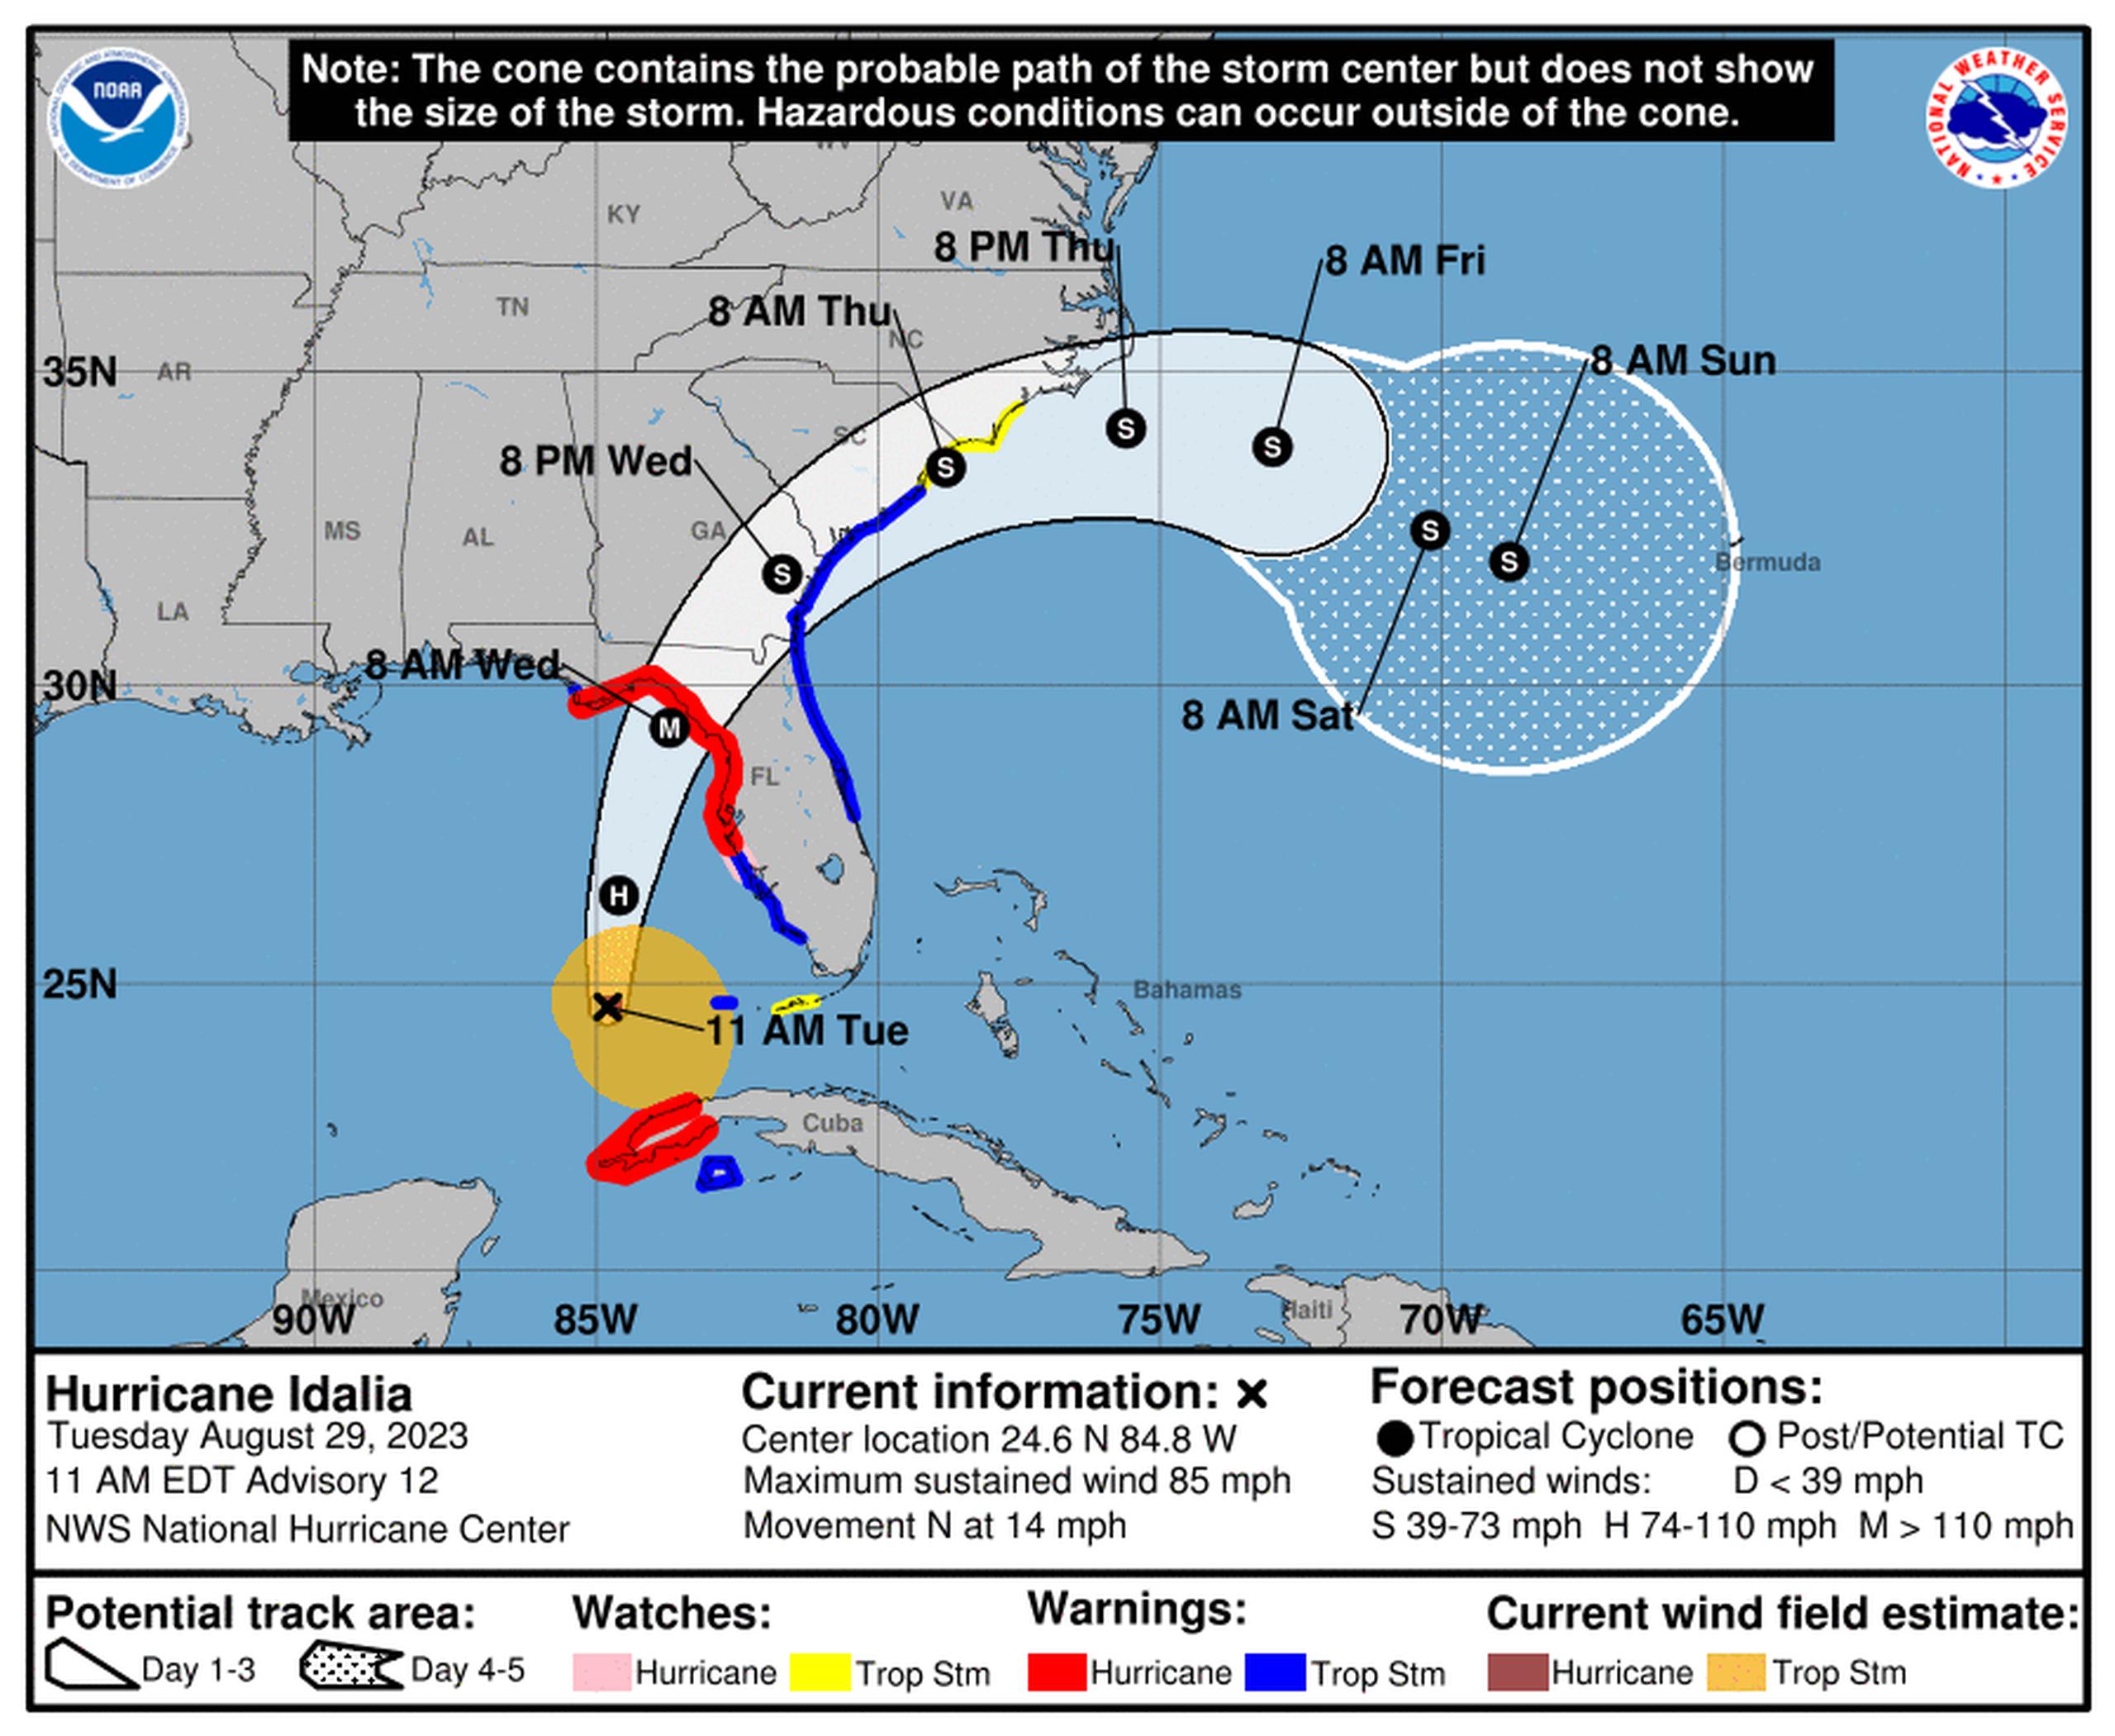 Pronóstico del huracán Idalia emitido a las 11:00 de la mañana del 29 de agosto de 2023.